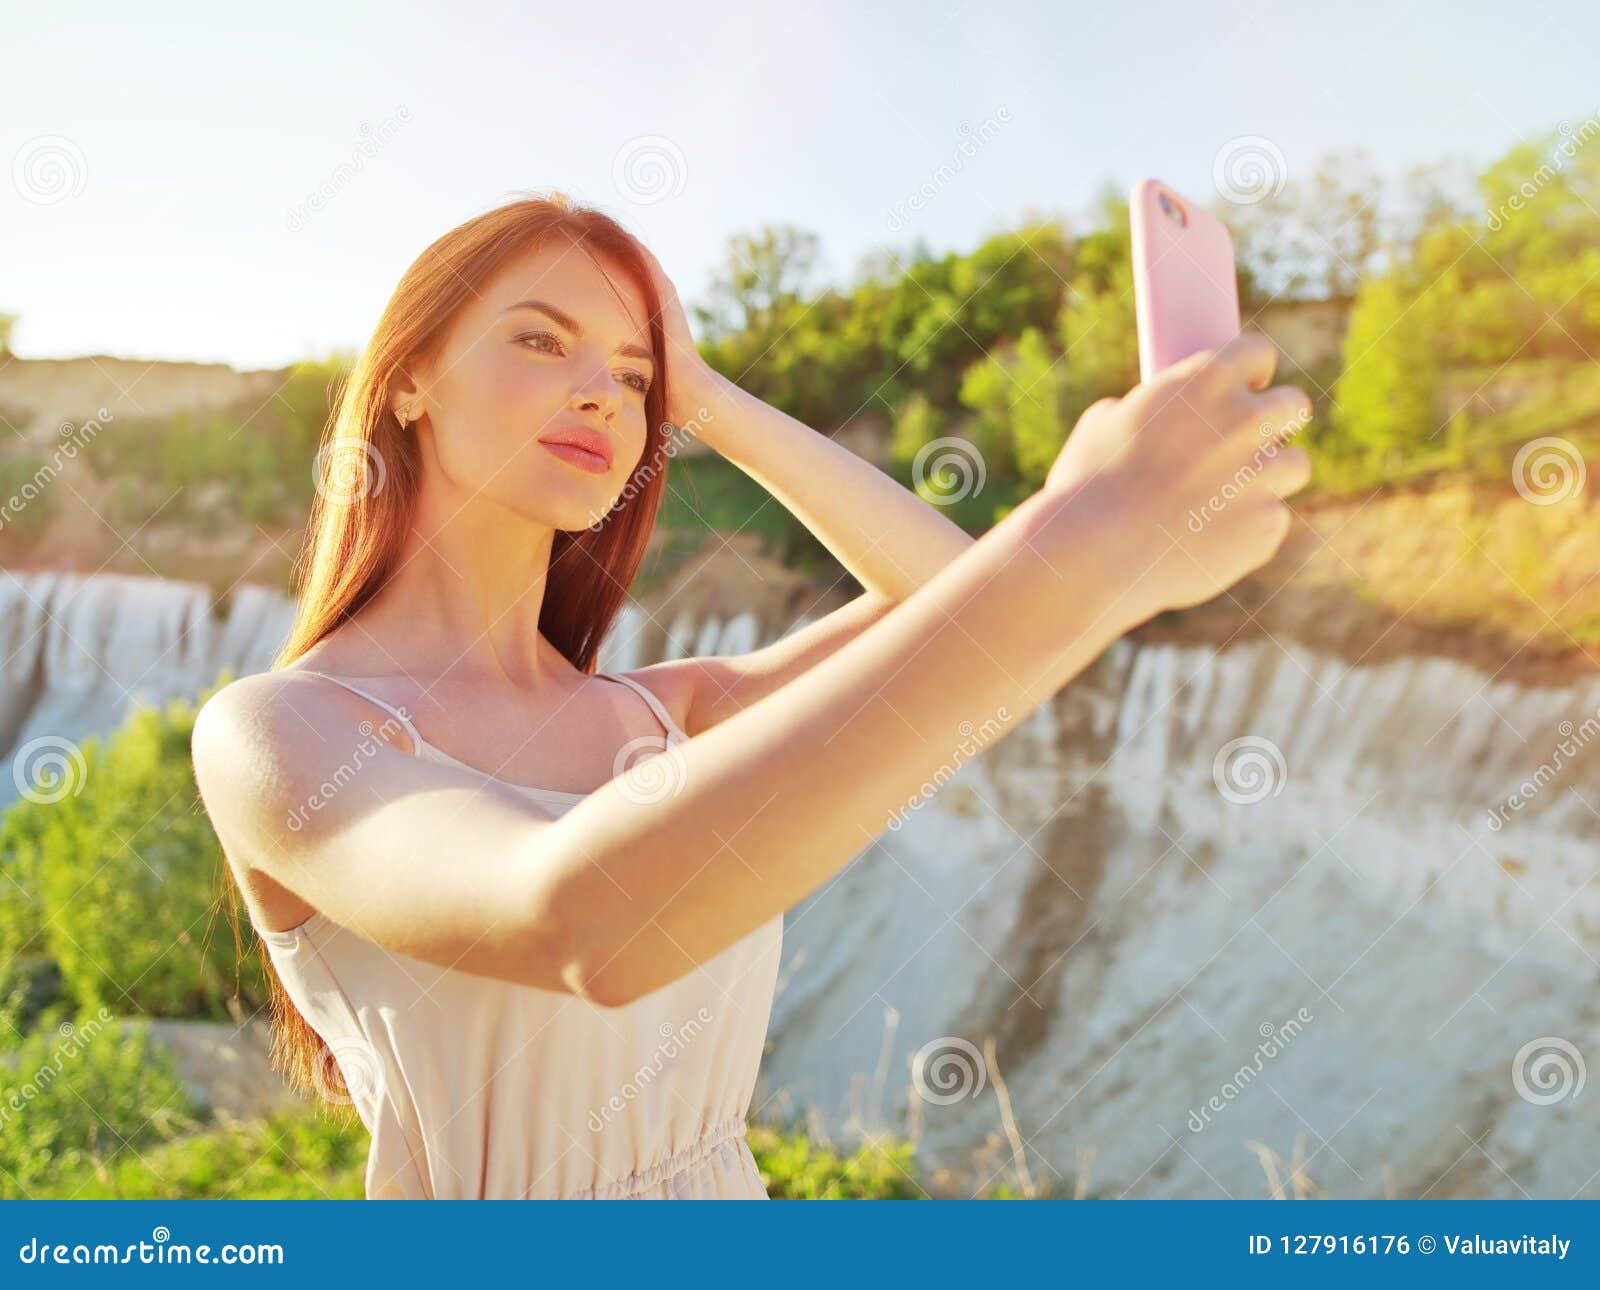 outdoor women selfies pics